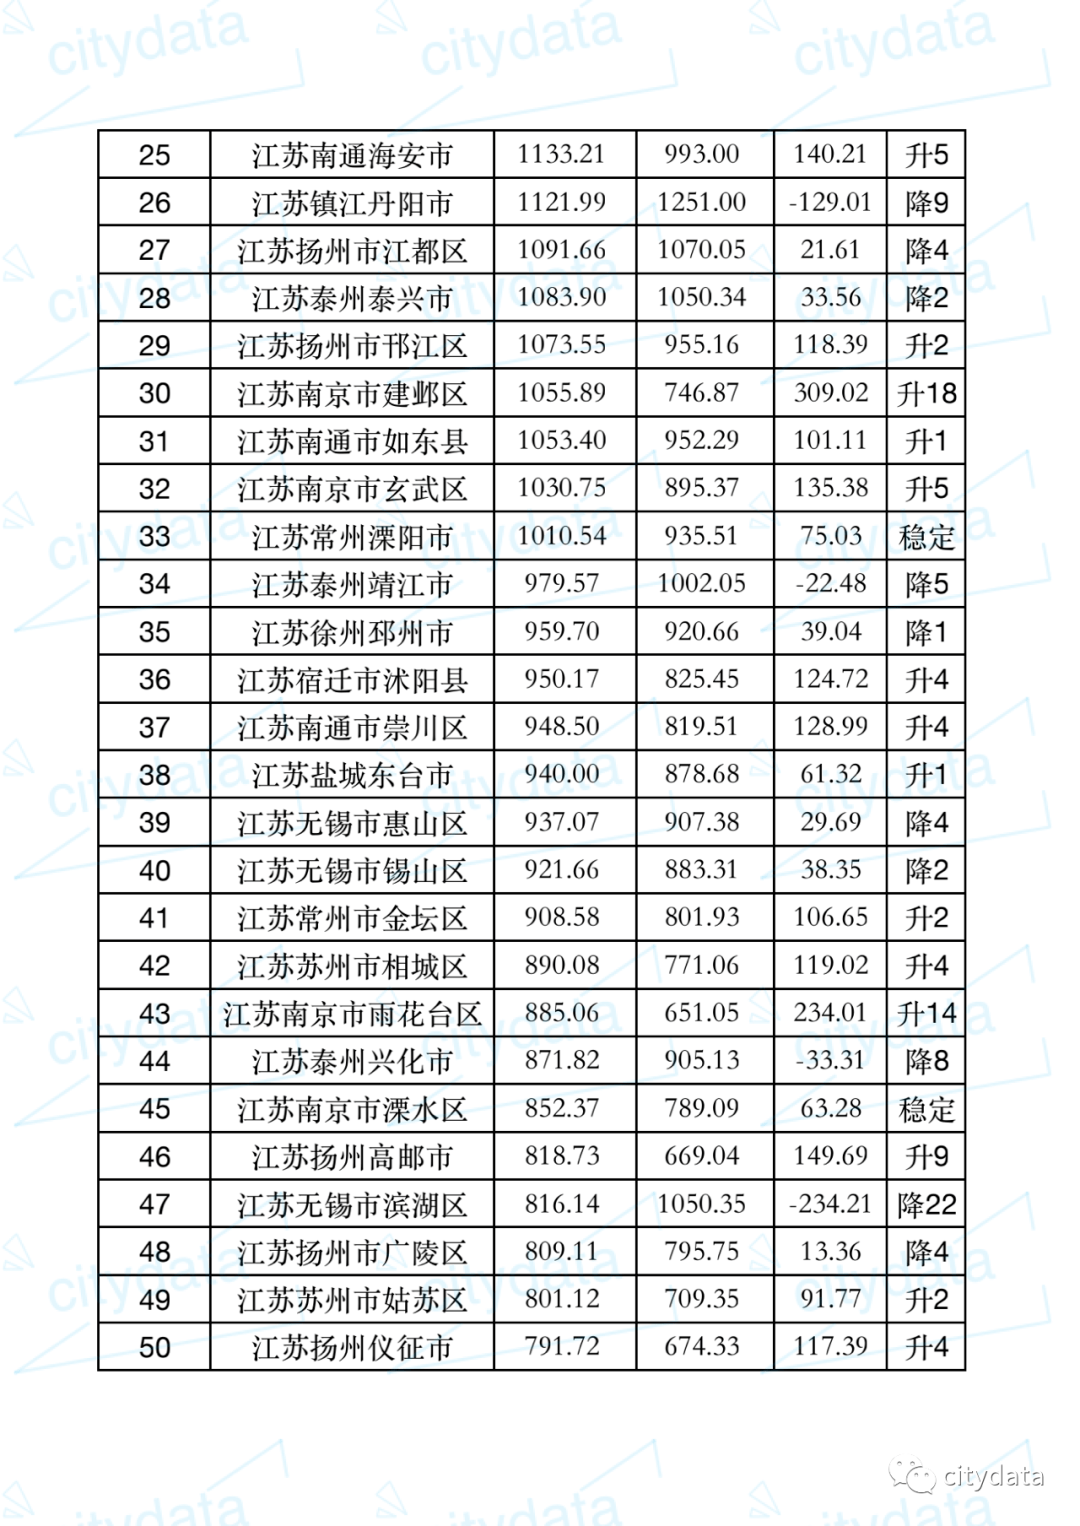 宝应县城市gdp排名_2017年江苏省各市人均GDP排名